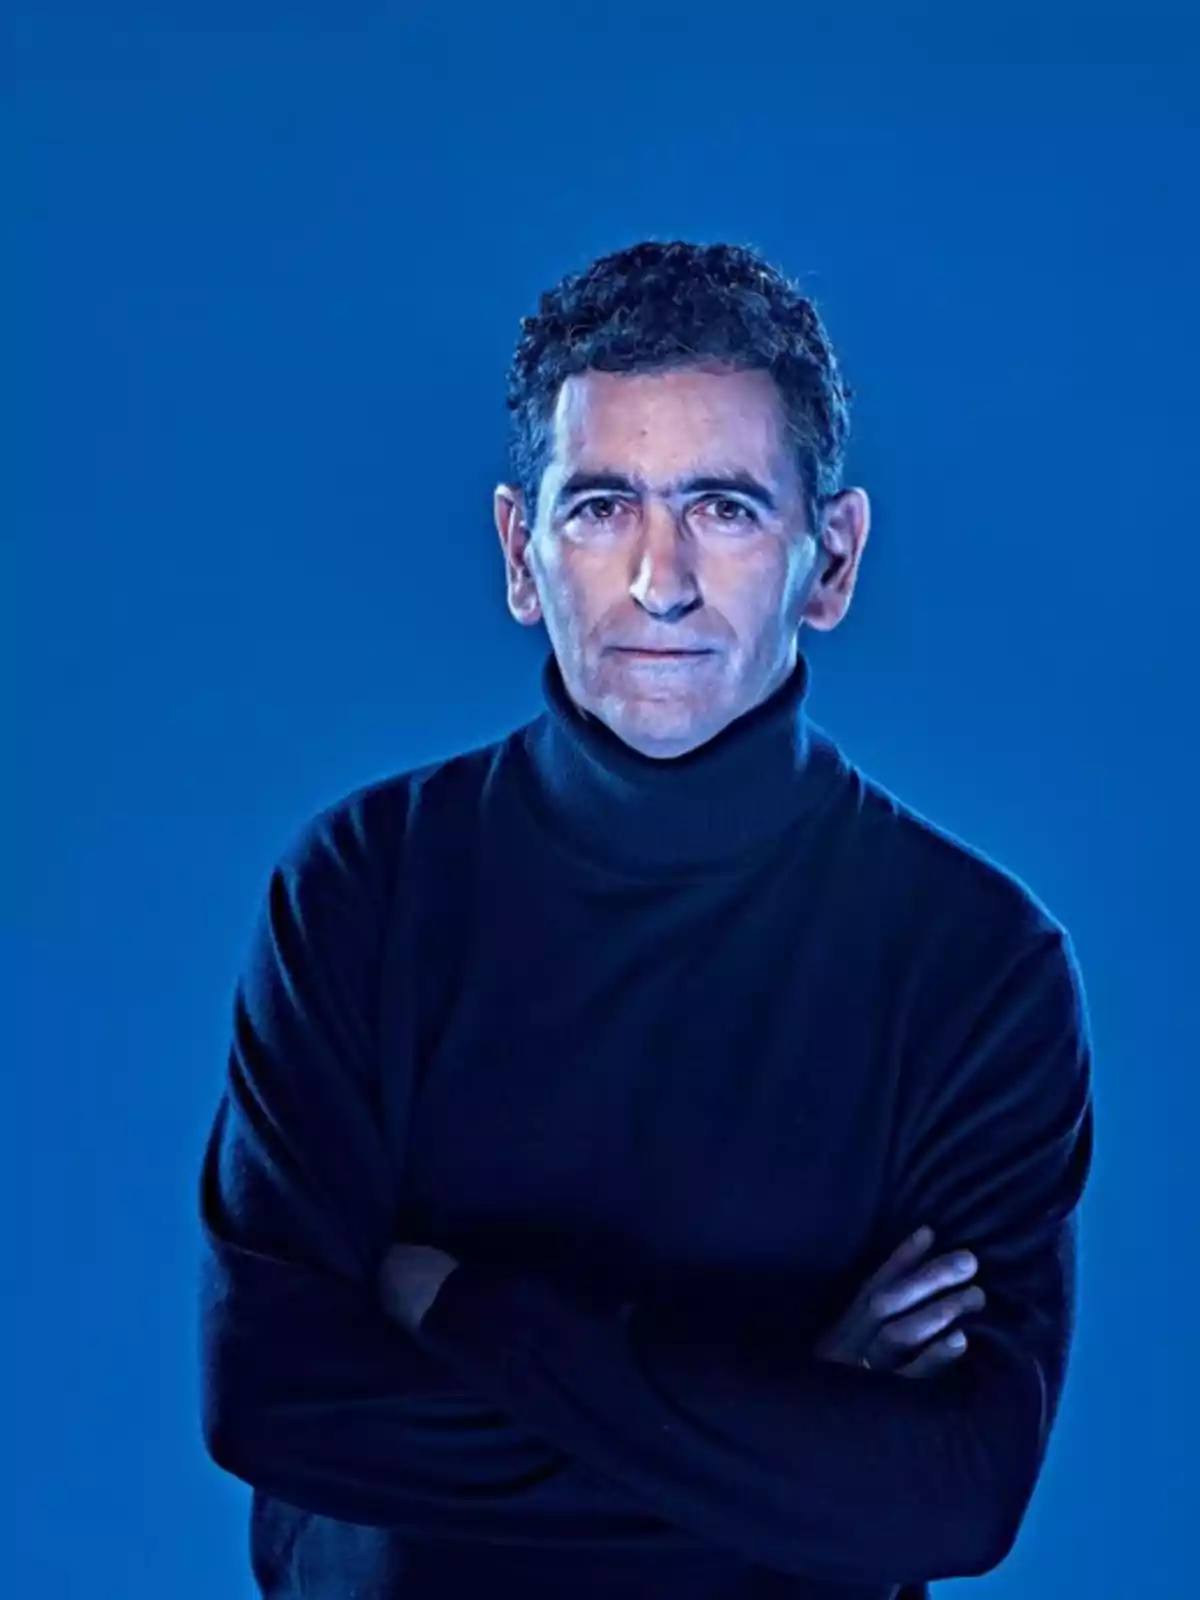 Hombre de cabello rizado y suéter negro posando con los brazos cruzados sobre un fondo azul.